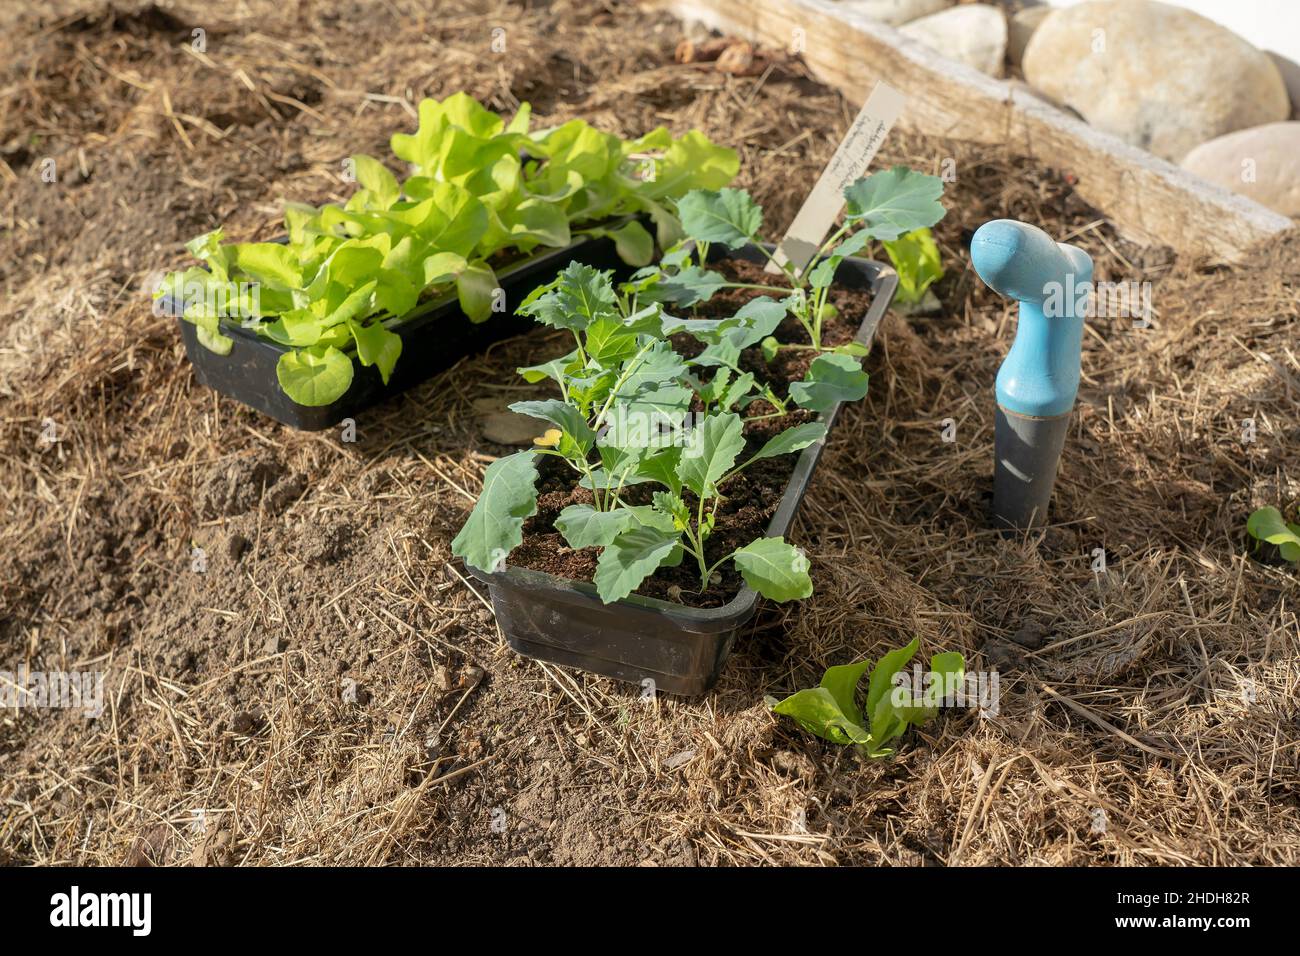 seedling, vegetable garden, sapling, seedlings, vegetable gardens Stock Photo